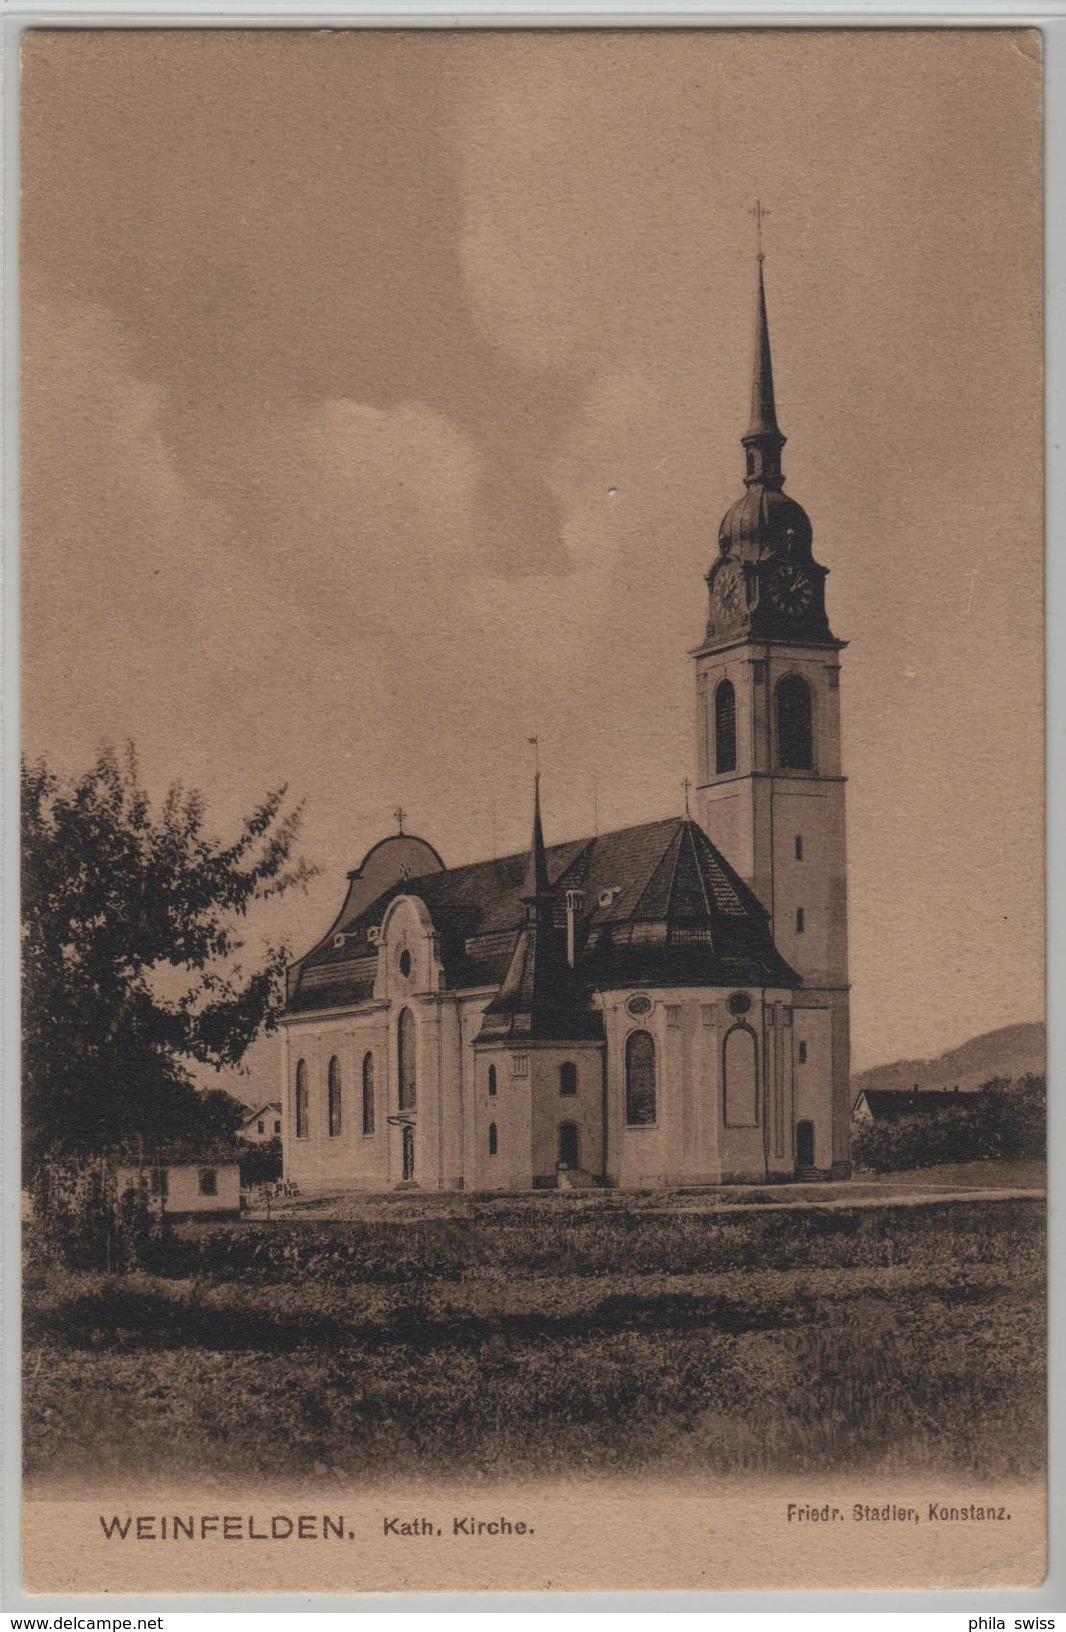 Weinfelden - Kath. Kirche - Photo: Friedr. Stadler - Weinfelden